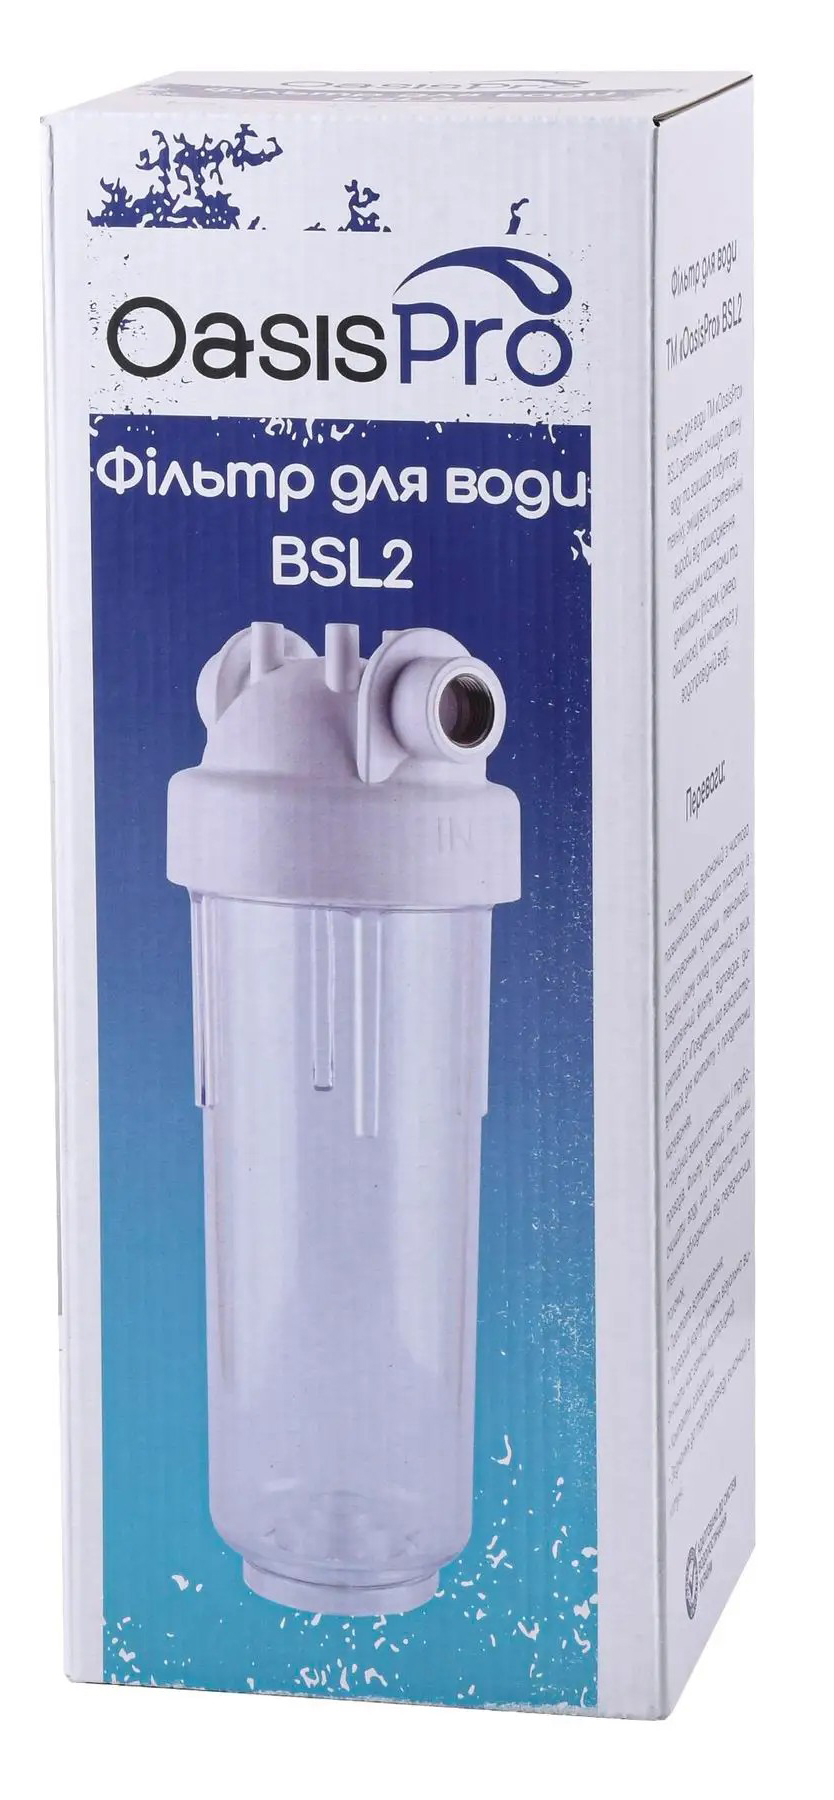 Фильтр OasisPro BSL2, 1" + коробка (без картриджа) обзор - фото 8